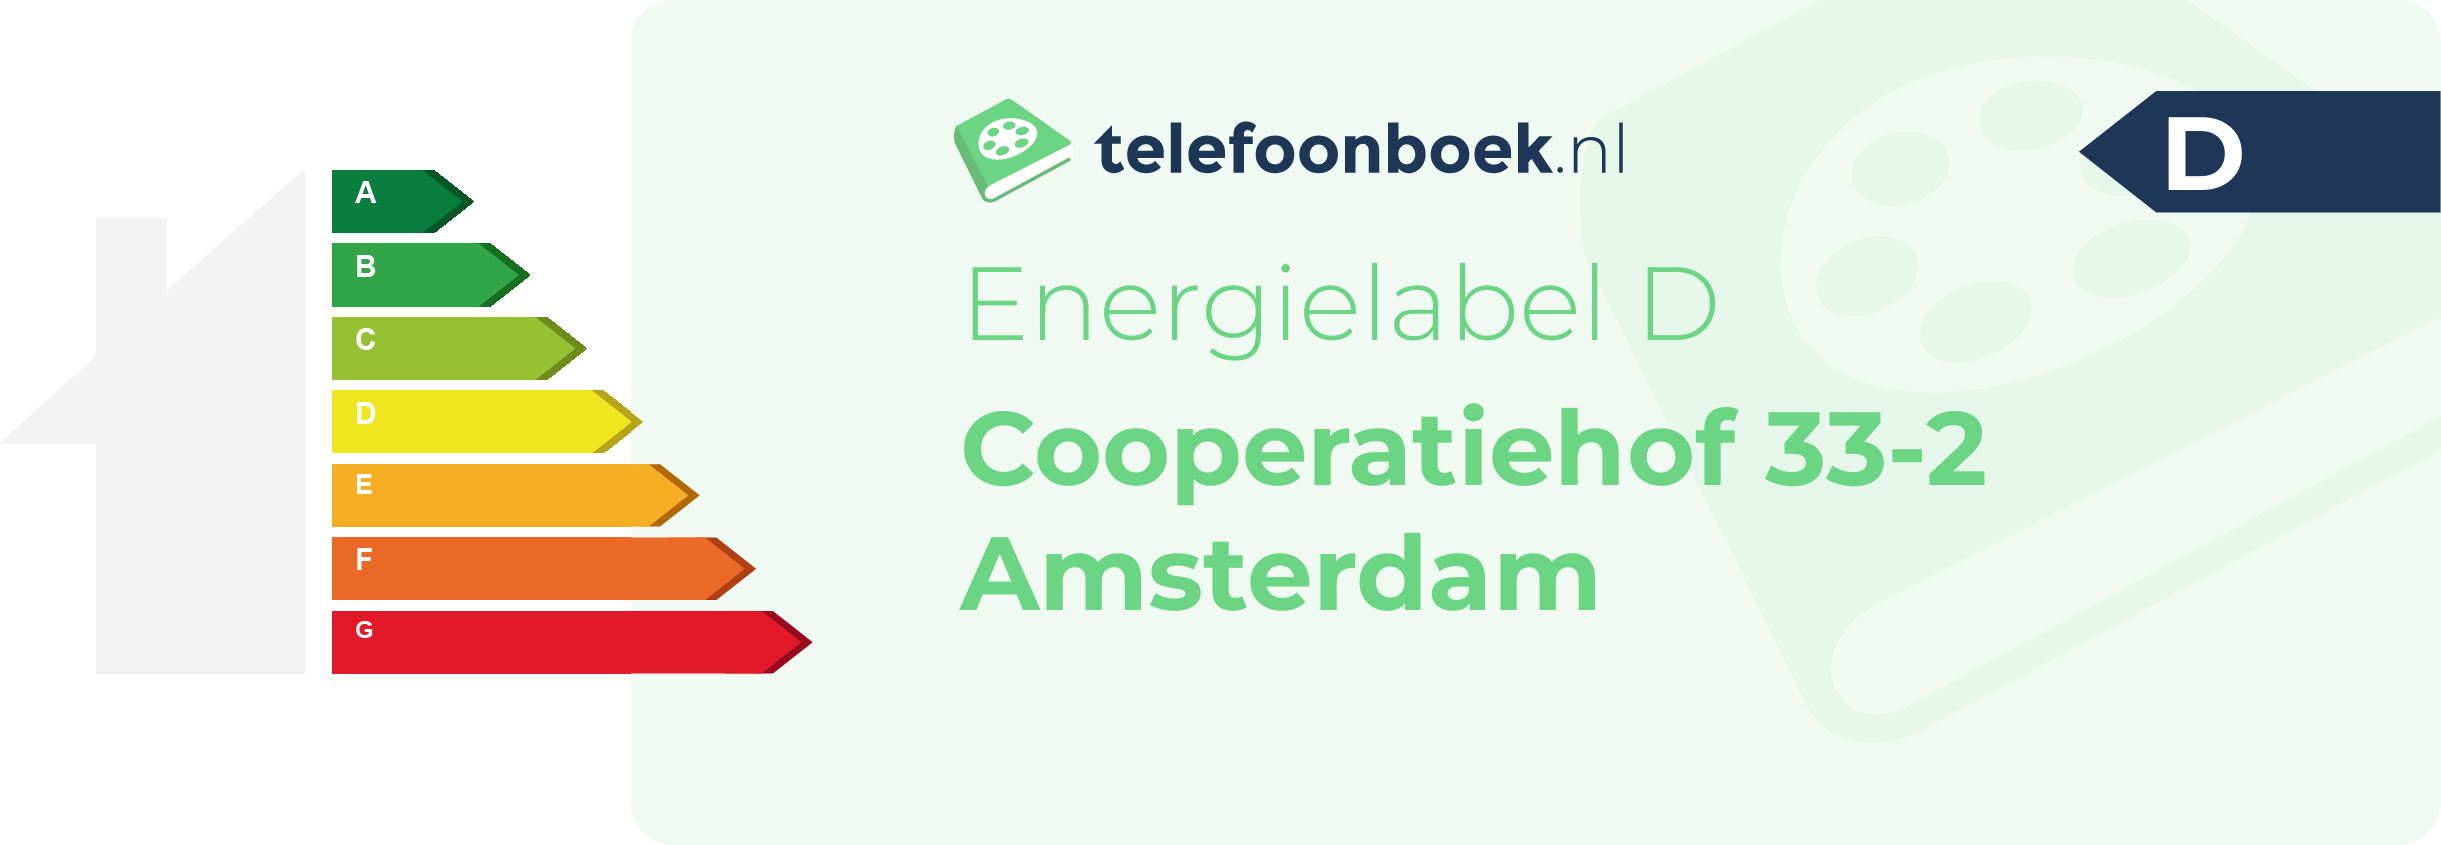 Energielabel Cooperatiehof 33-2 Amsterdam